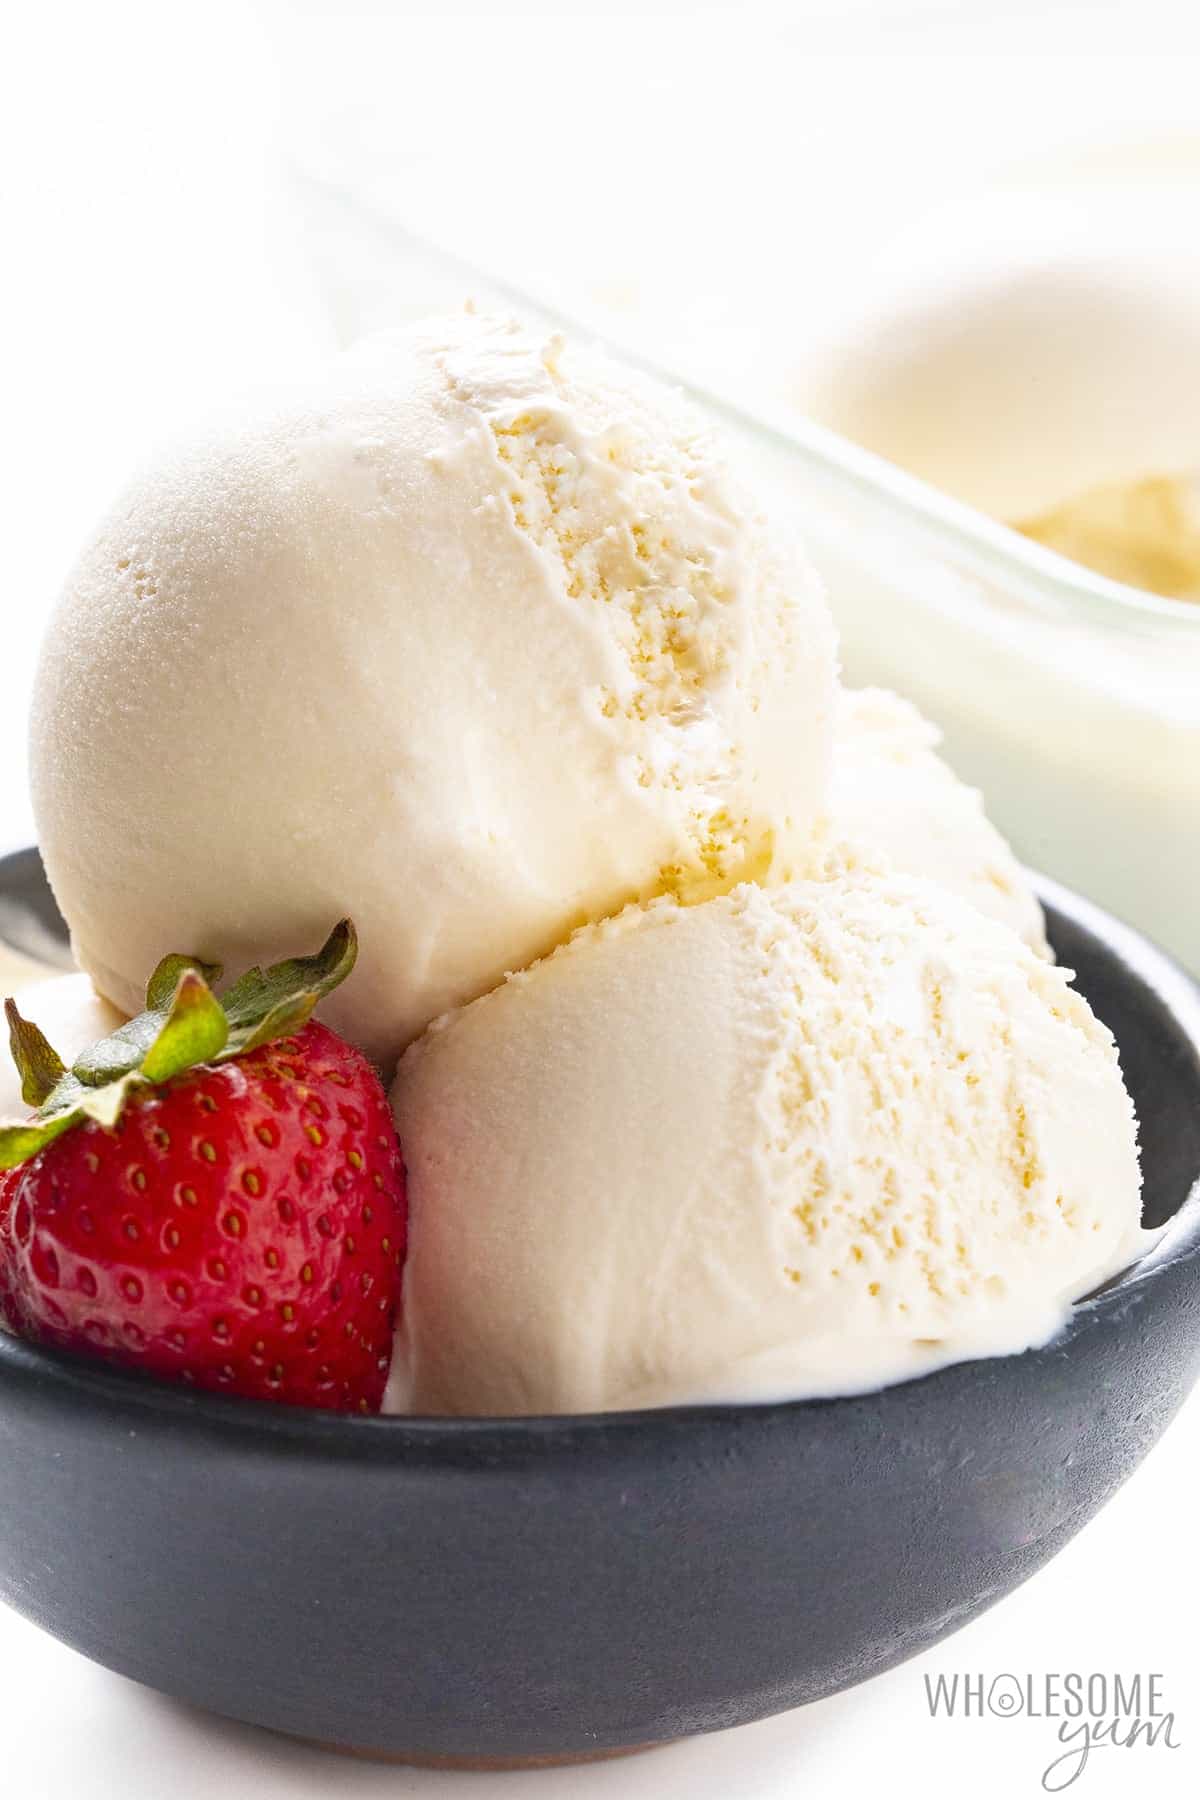 Sugar-free ice cream recipe in a bowl.